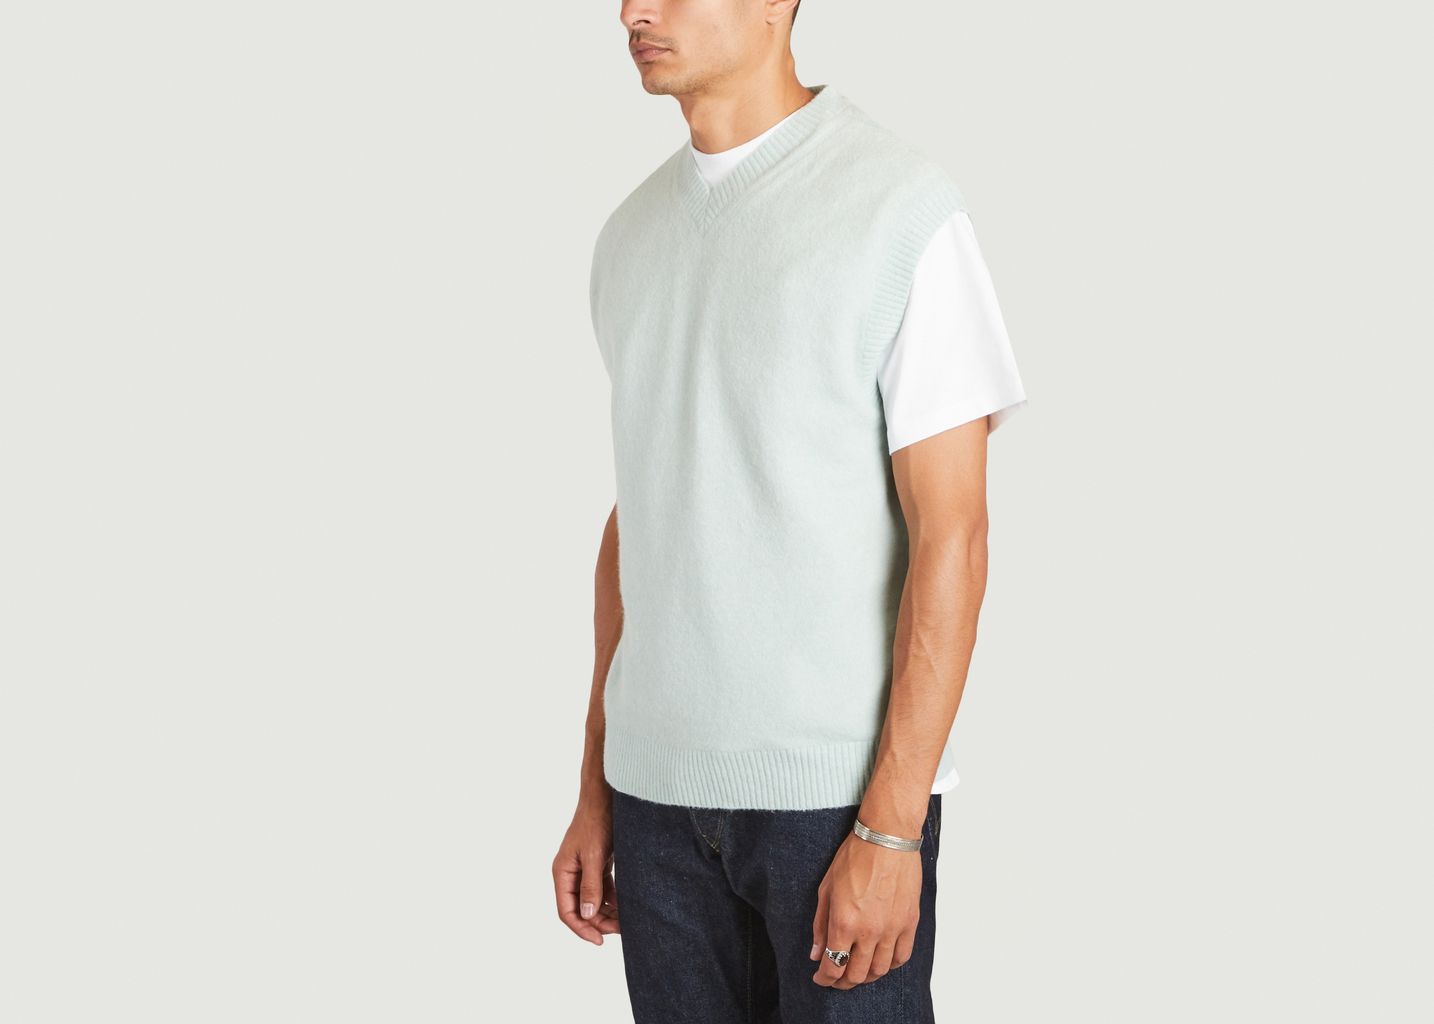 V-neck long sleeve sweater 6501 - NN07